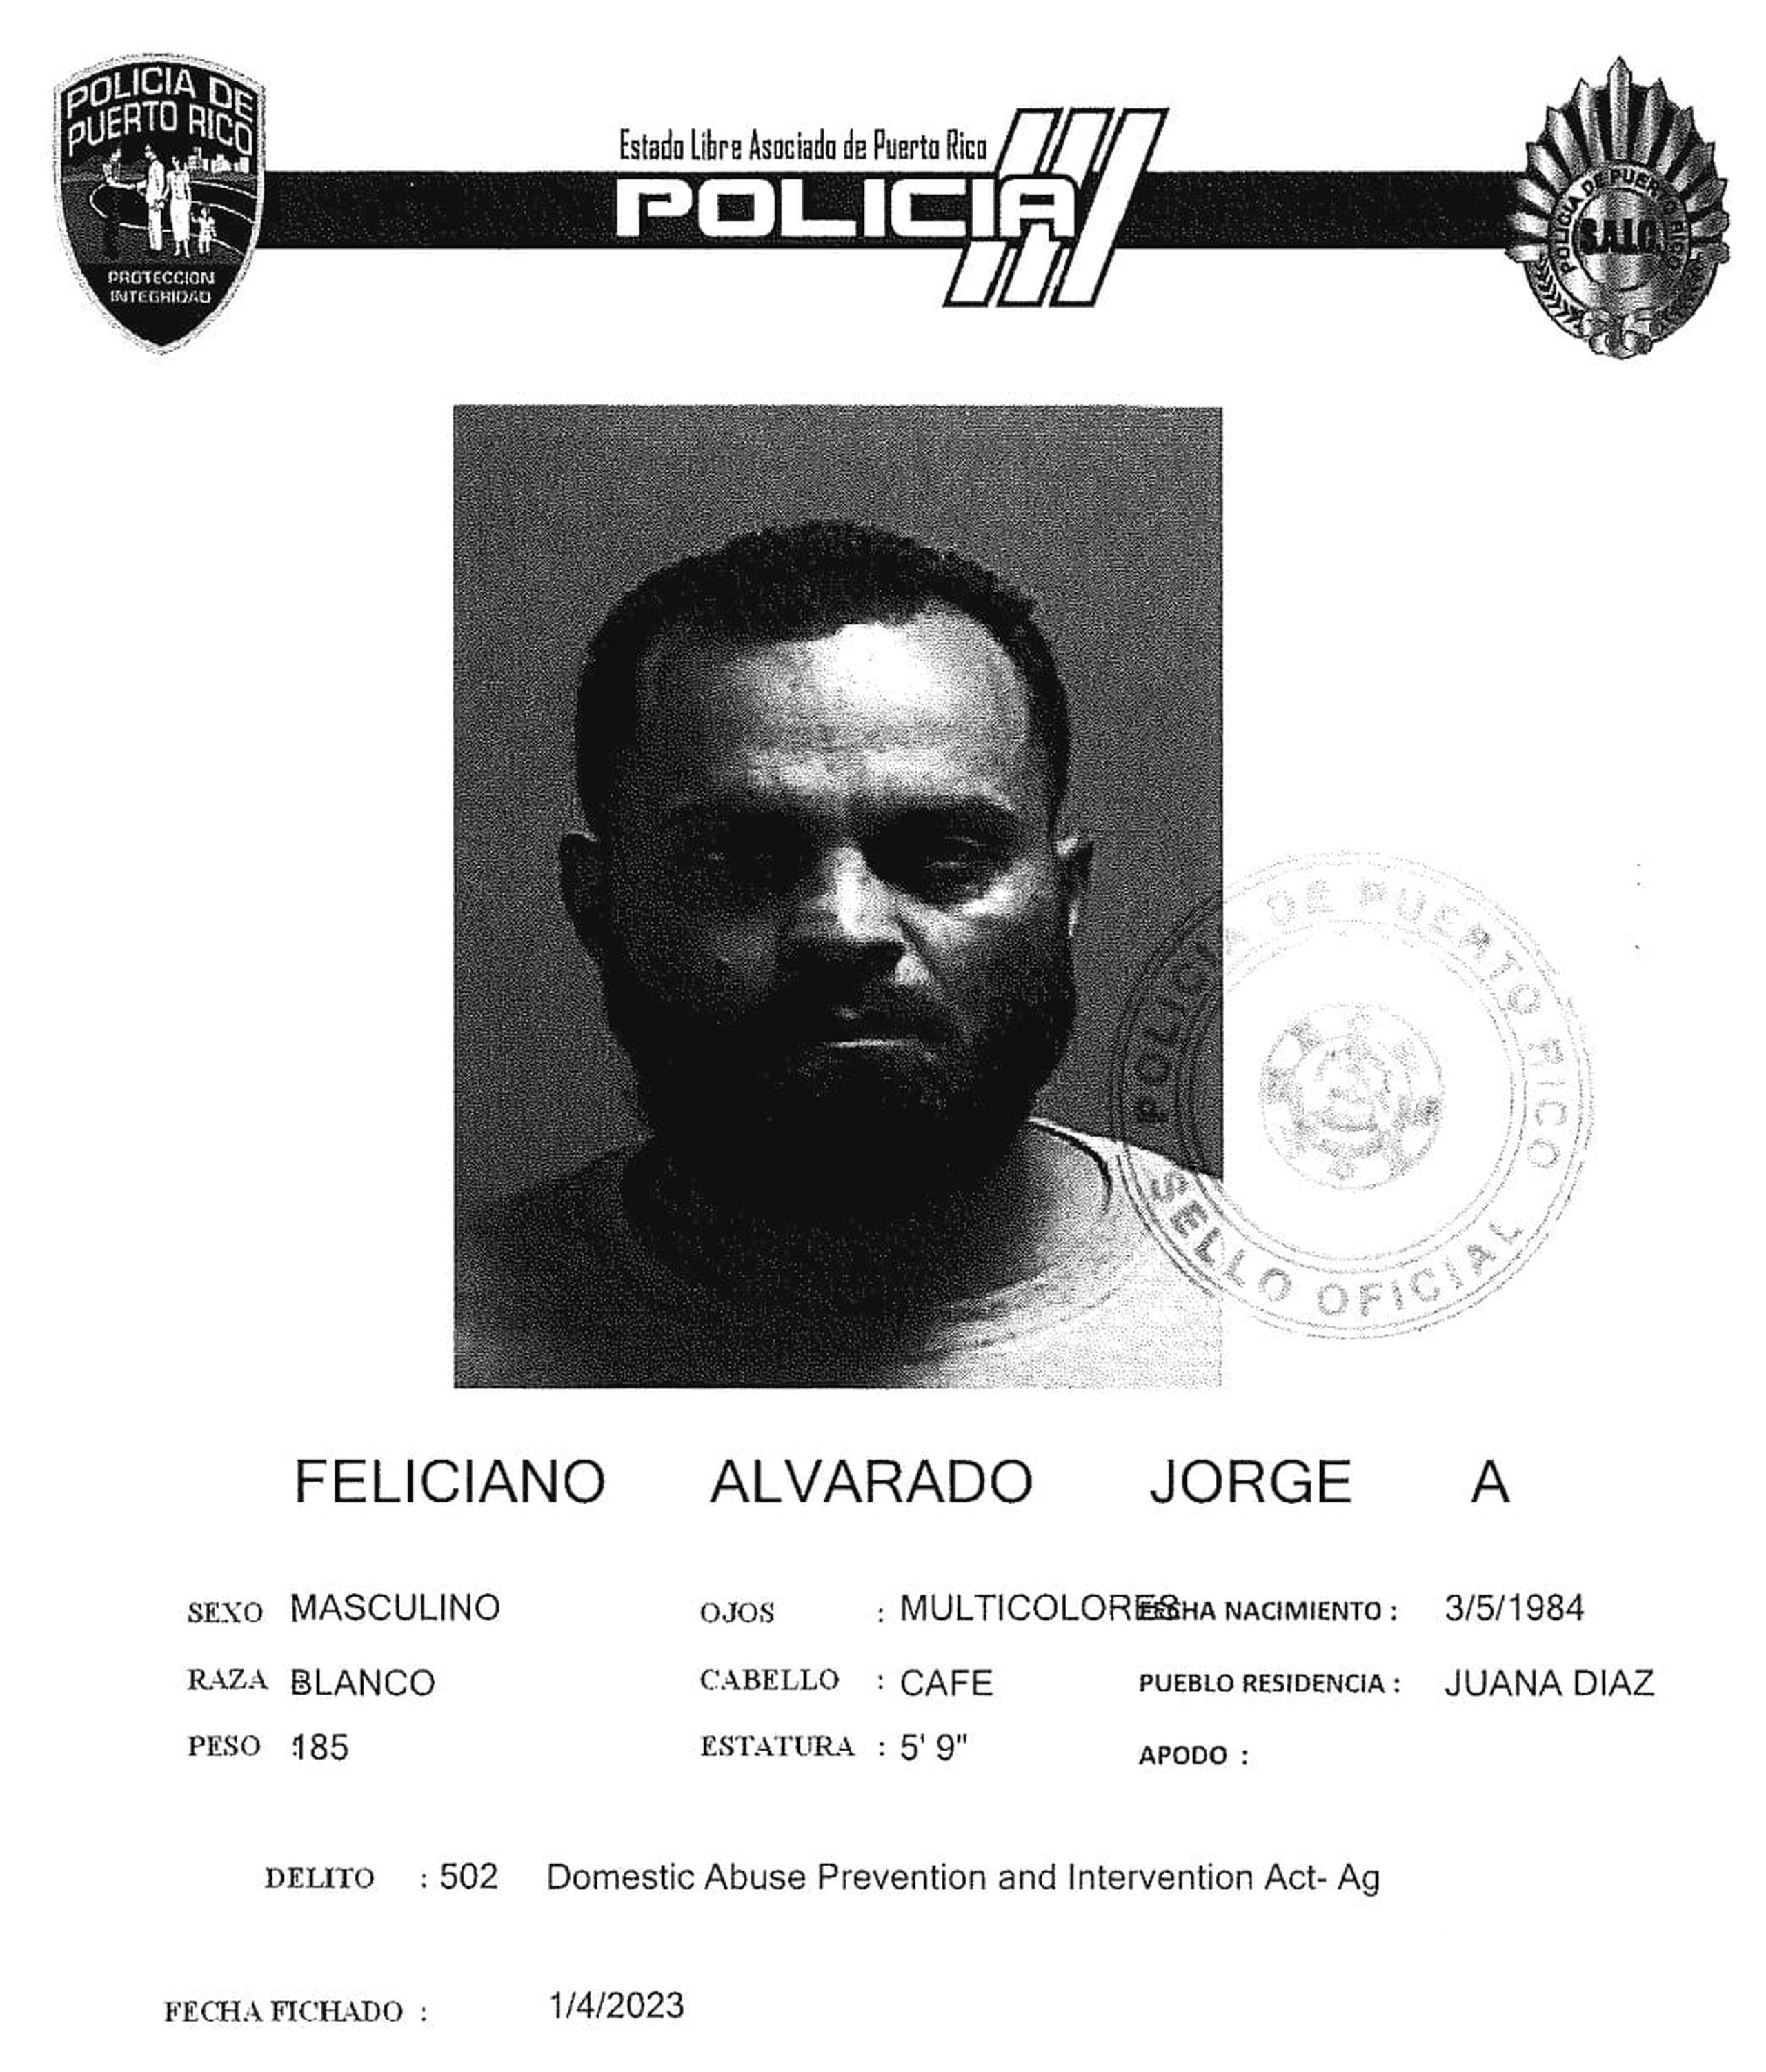 La jueza Adria Cruz Cruz, del Tribunal de Ponce, determinó causa para arresto contra Jorge Feliciano Alvarado por violación al artículo 3.2(D) por maltrato agravado bajo la Ley 54 para la Prevención e Intervención con la Violencia Doméstica.